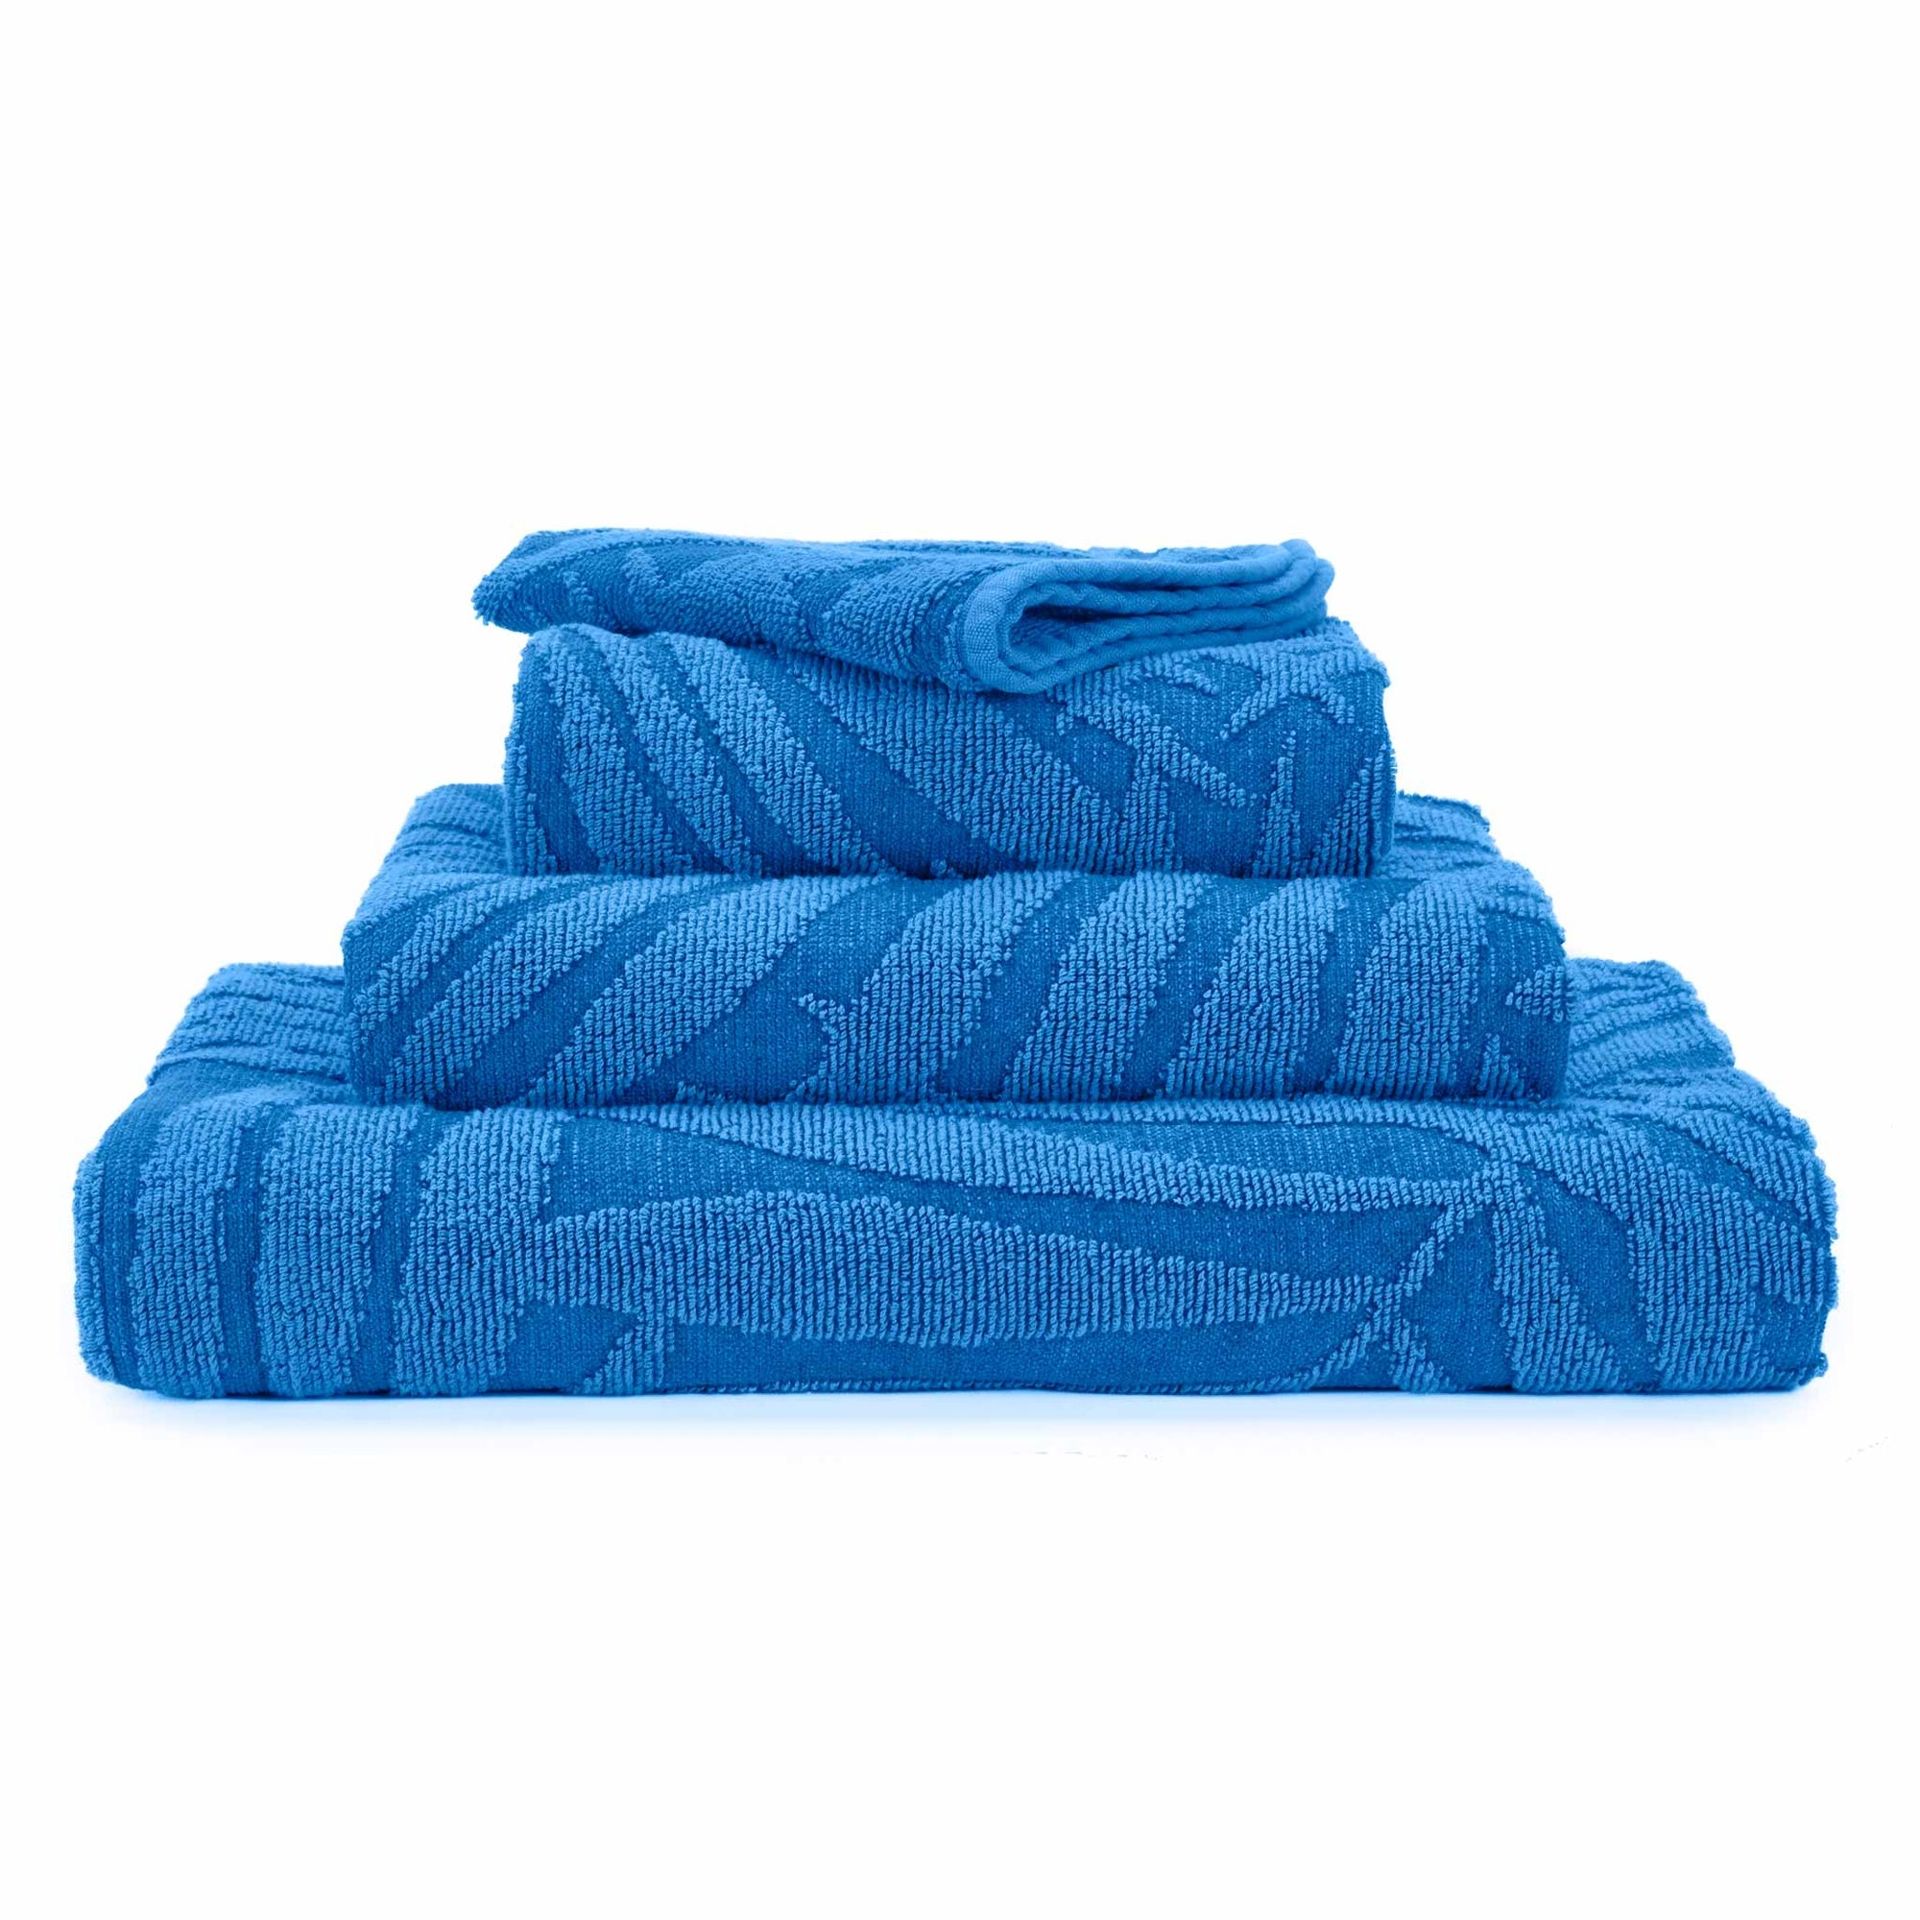 Abyss & Habidecor Luxusní ručníky Abyss z egyptské bavlny | 383 Zanzibar, Velikost 40x75 cm